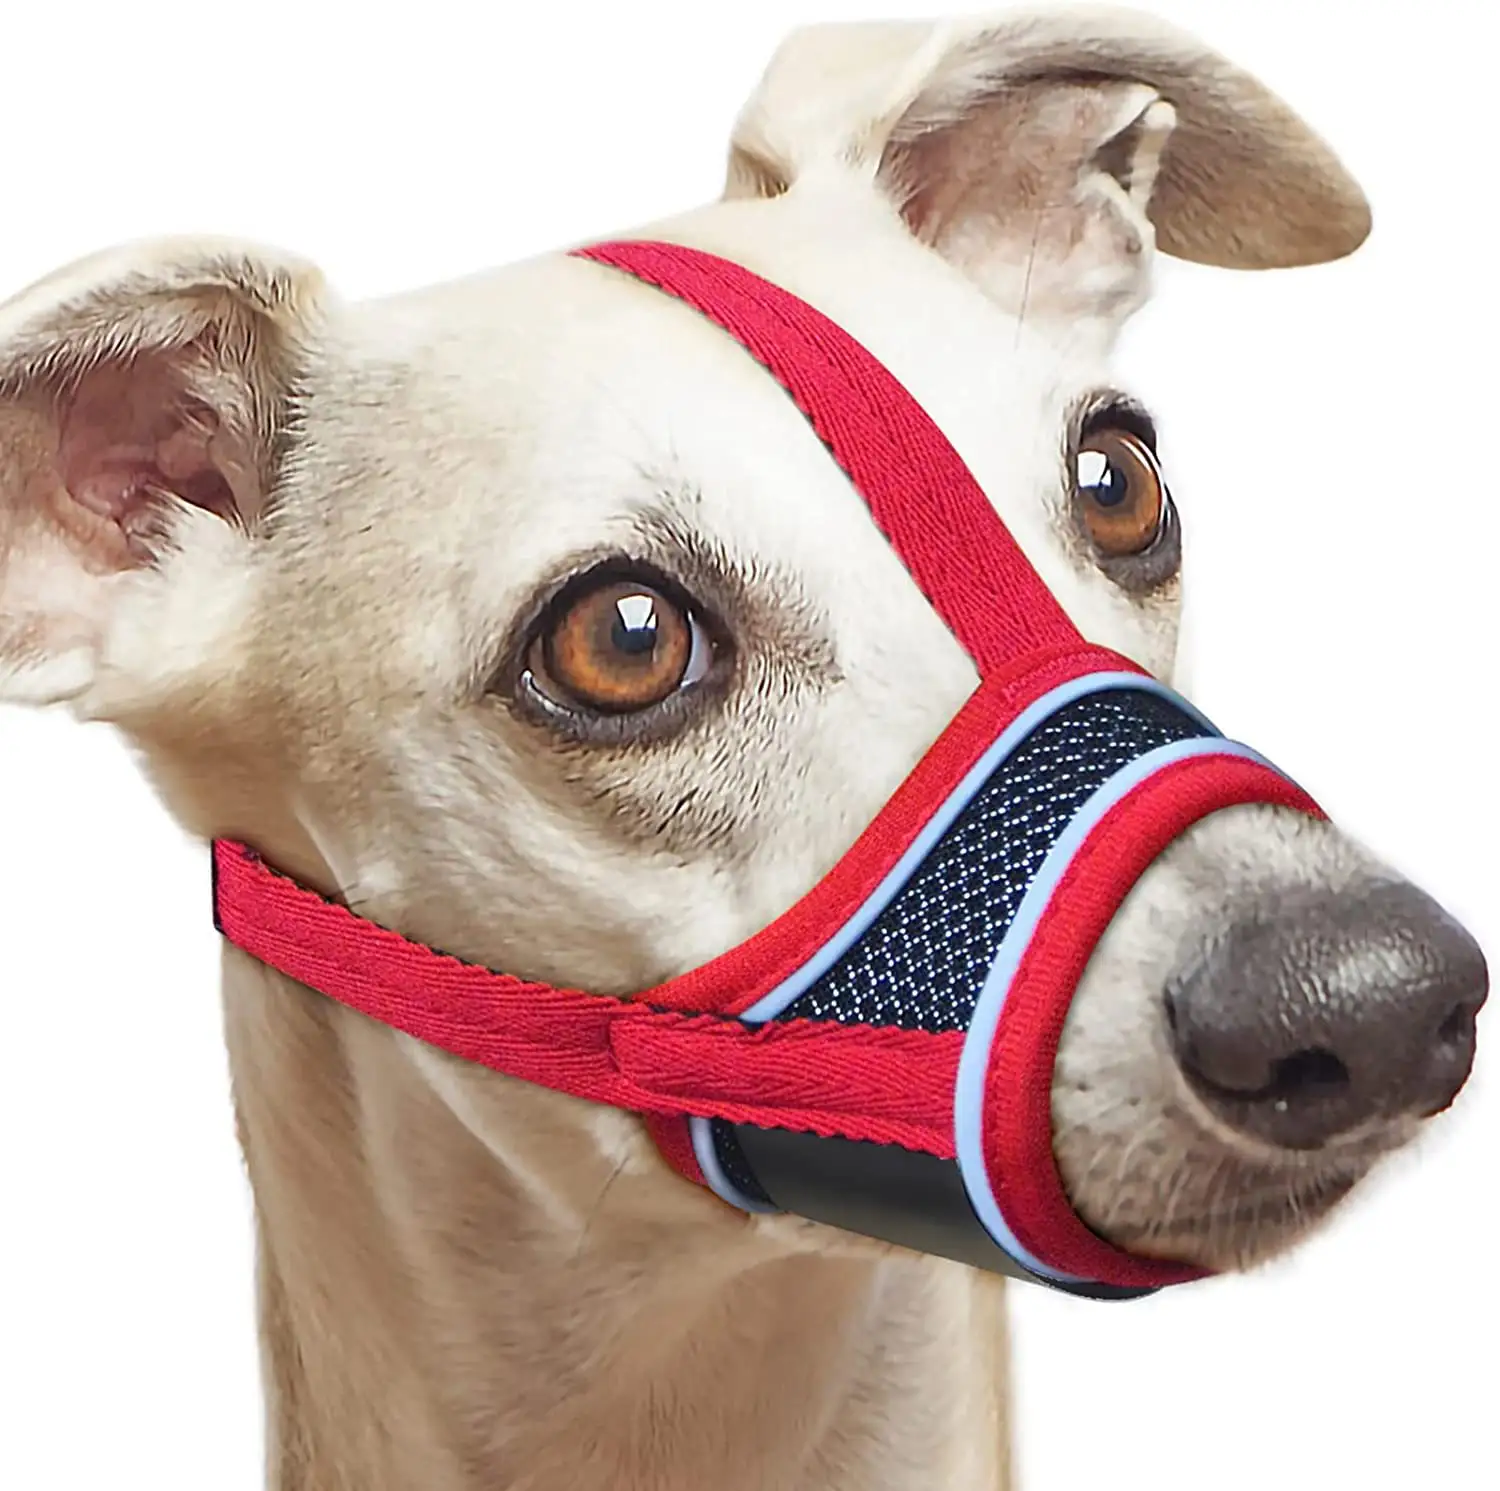 Bozal reflectante y suave de nailon para perros: bozal transpirable con correas reforzadas y malla ventilada para mascotas cómodas